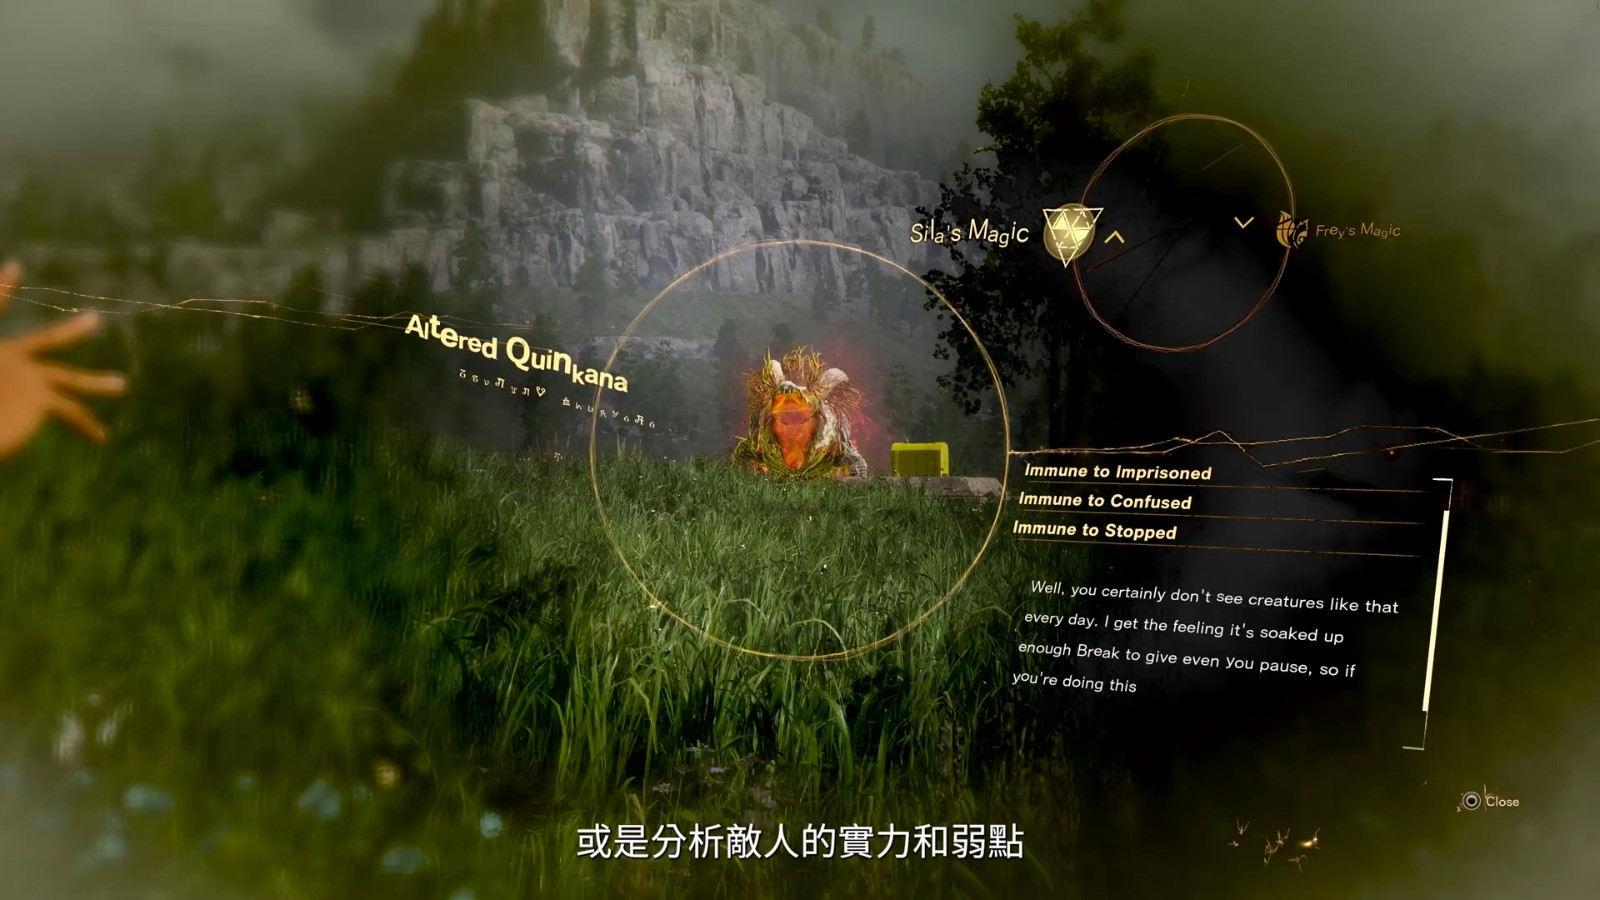 《魔咒之地》“魔法战斗”介绍视频 中文字幕